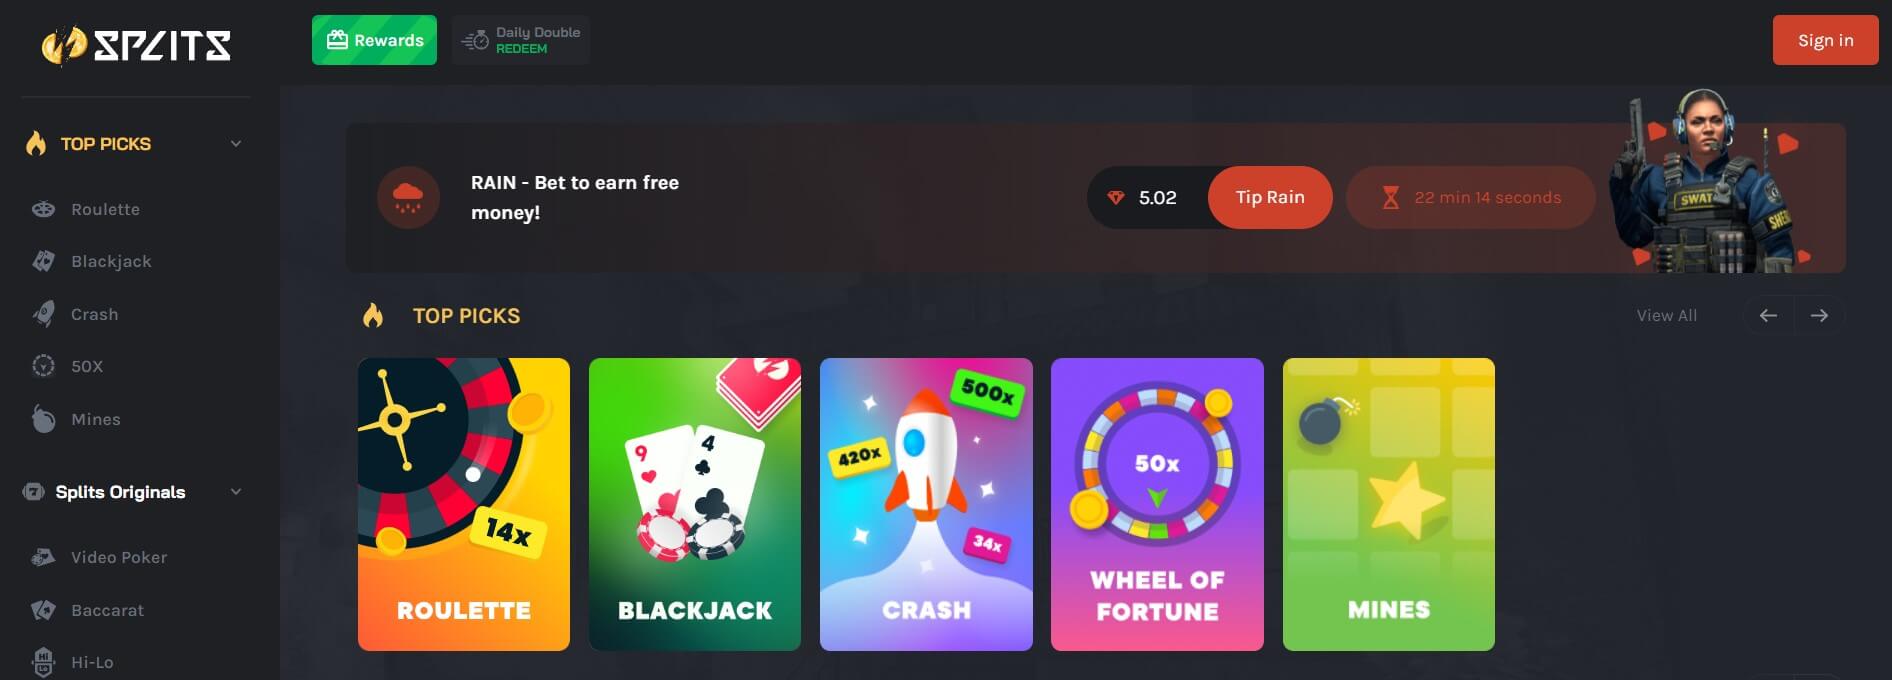 splits casino